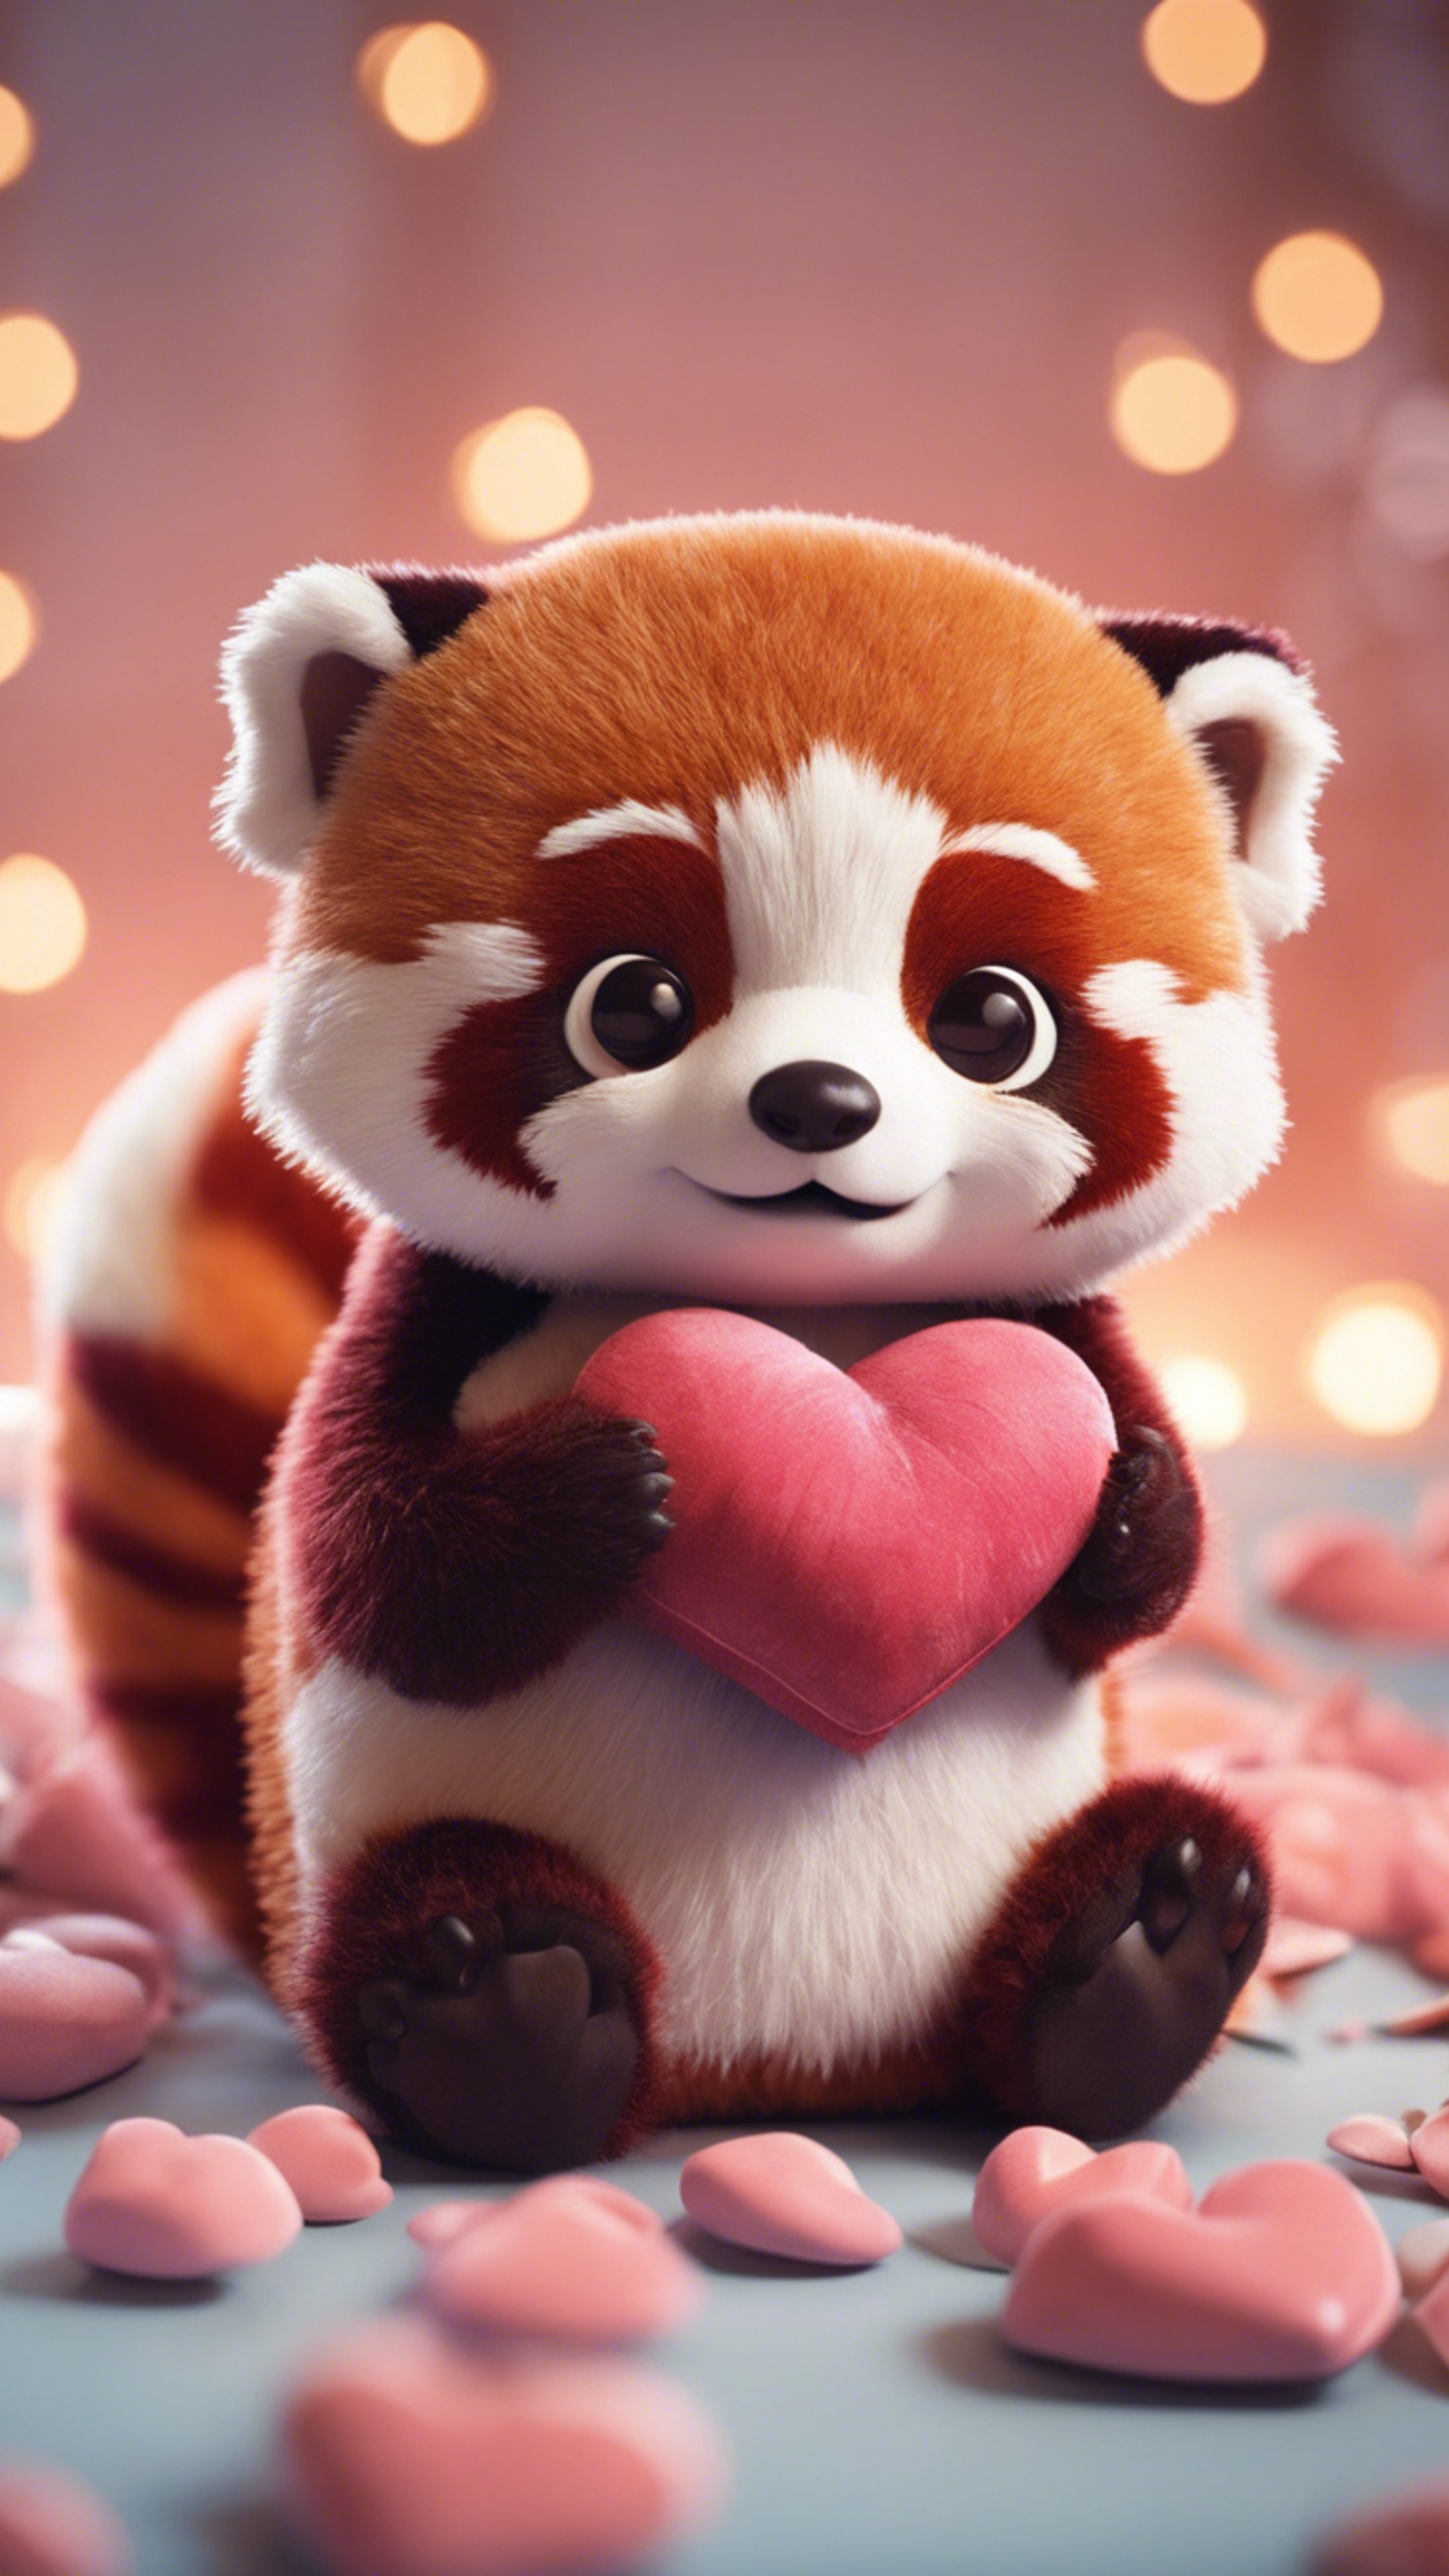 A kawaii red panda, wide-eyed, hugging a heart-shaped pillow. Wallpaper[45d6f15b7fce49d58985]